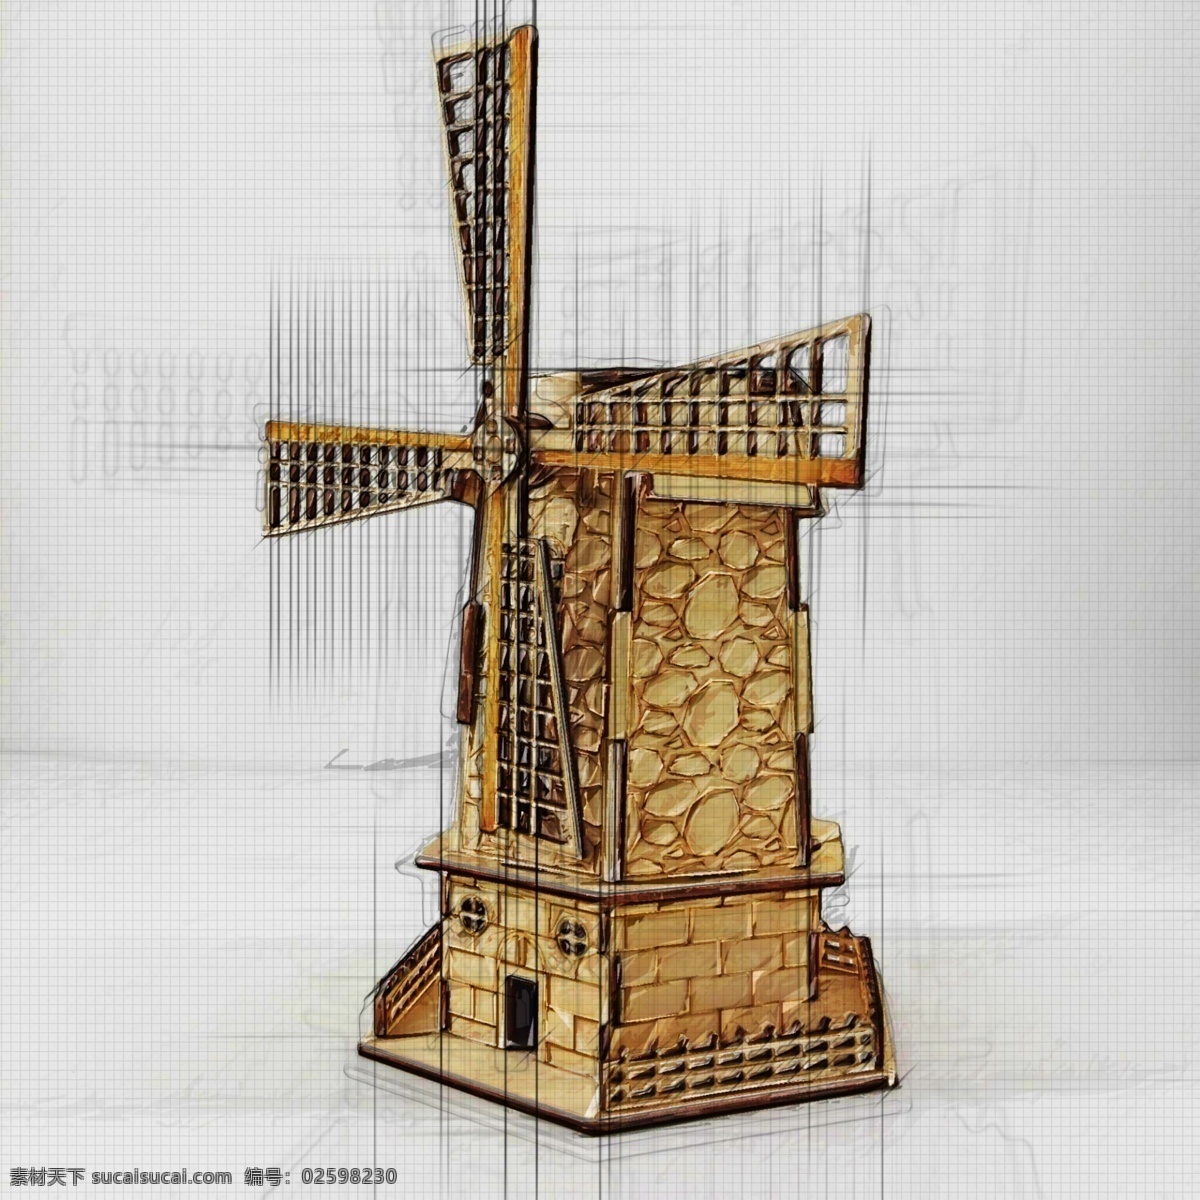 简 笔画 手绘 荷兰 风车 简笔画 木质结构 简笔手绘 动漫动画